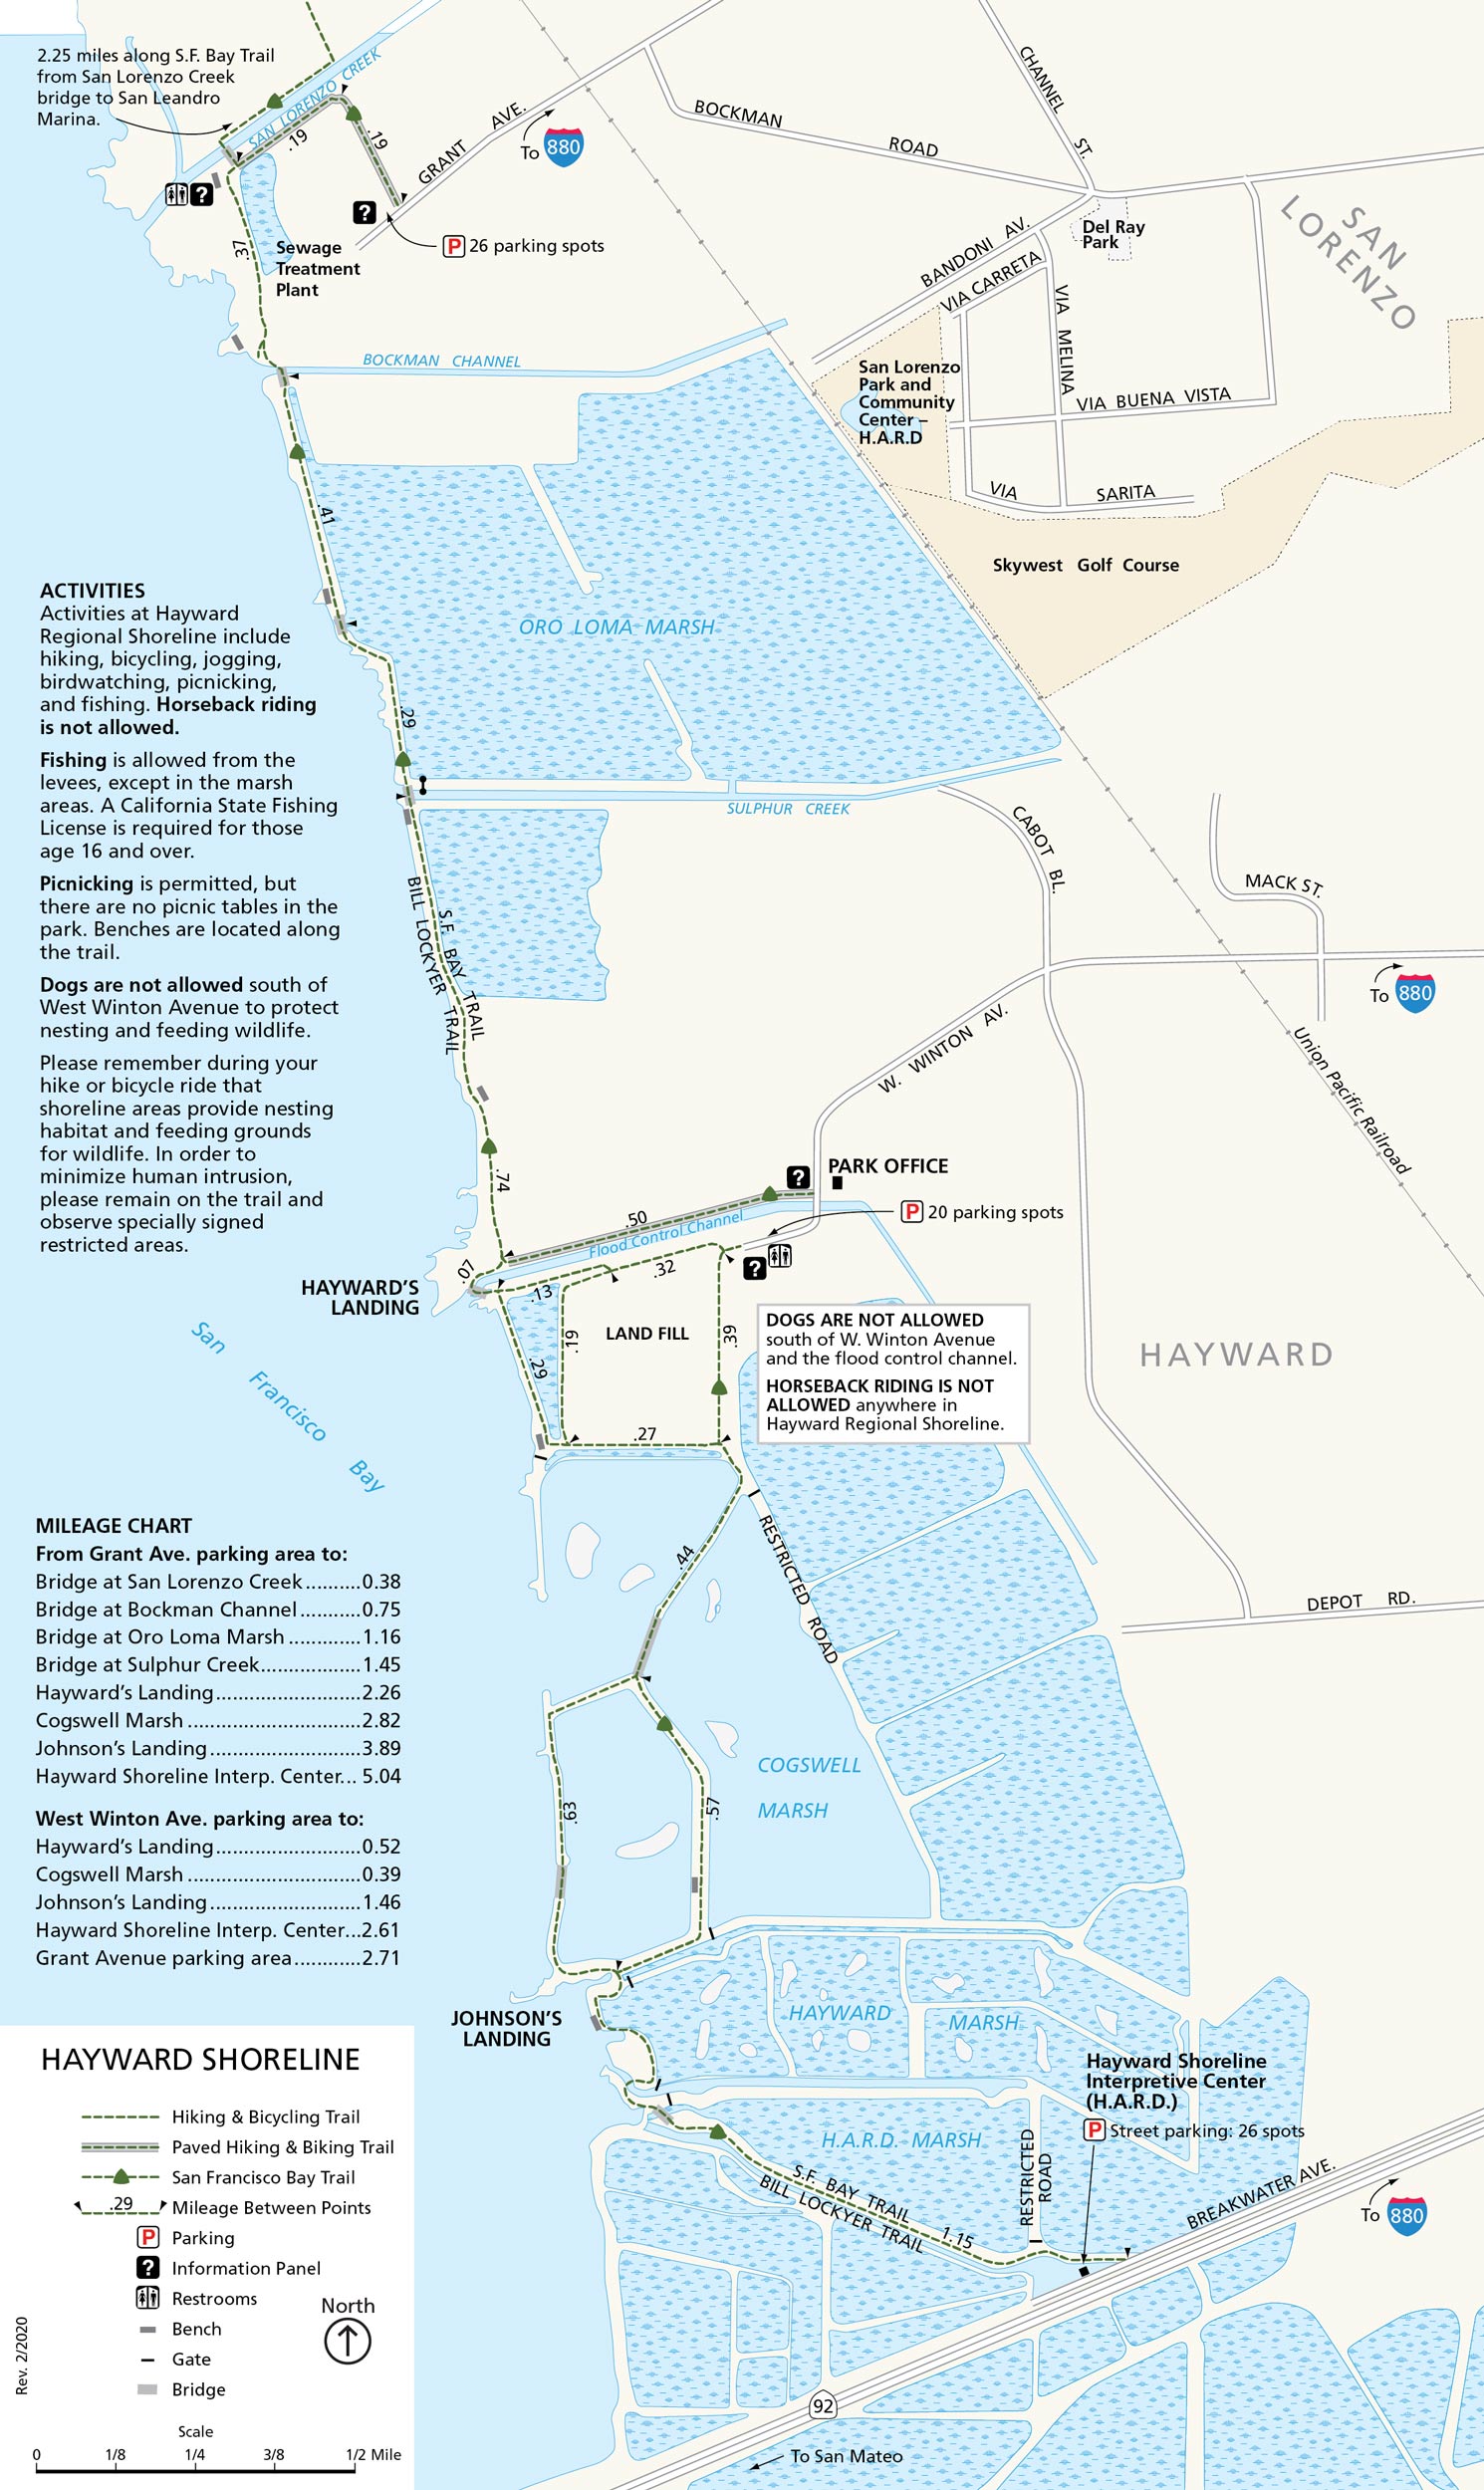 Map of Hayward Shoreline